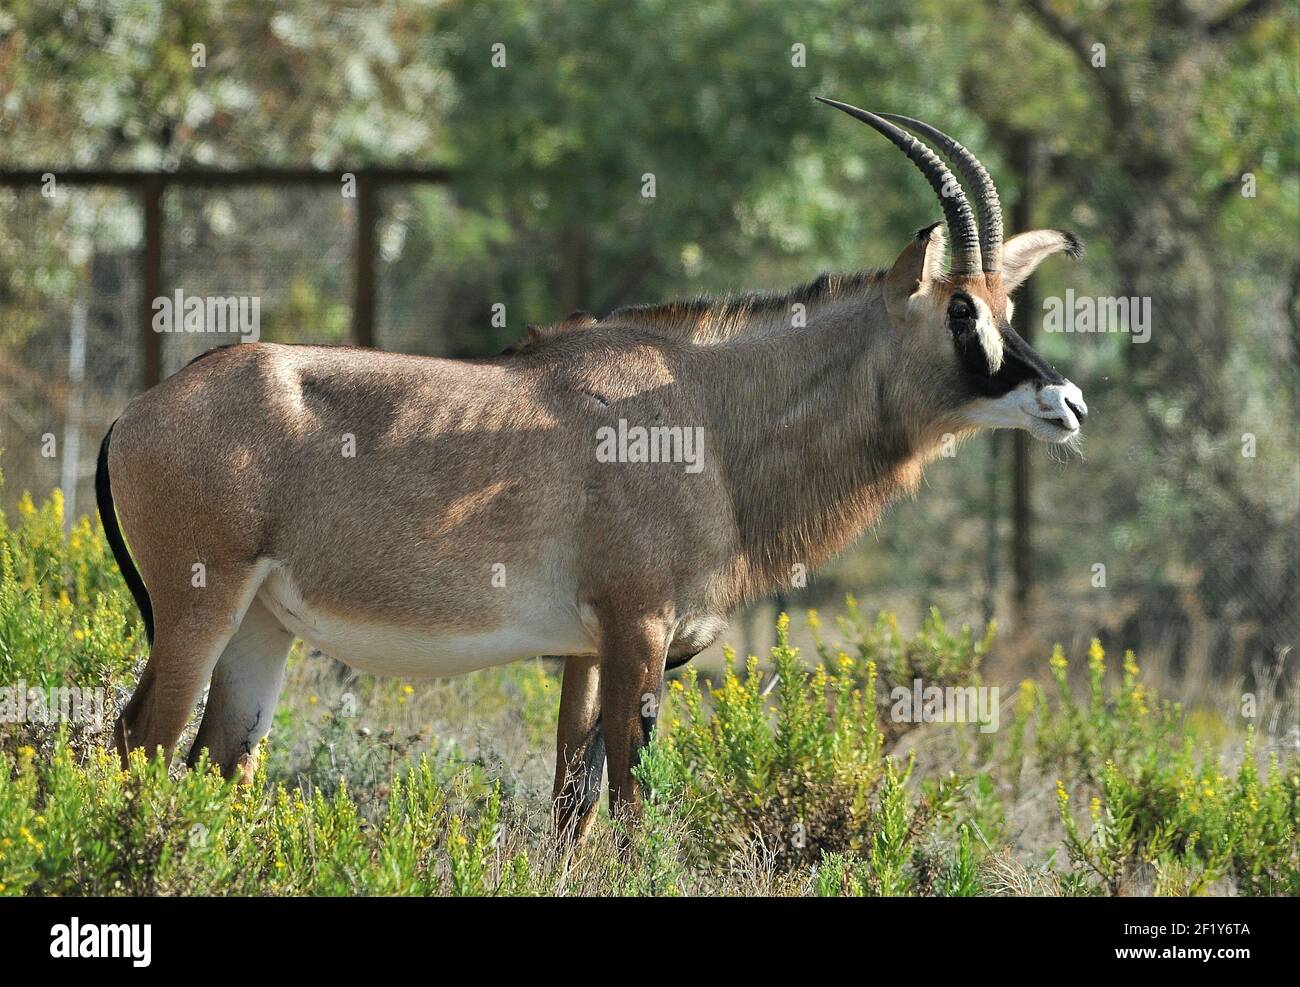 Antilope de sable (Hippotragus niger) dans la réserve africaine de Sigean-France Banque D'Images